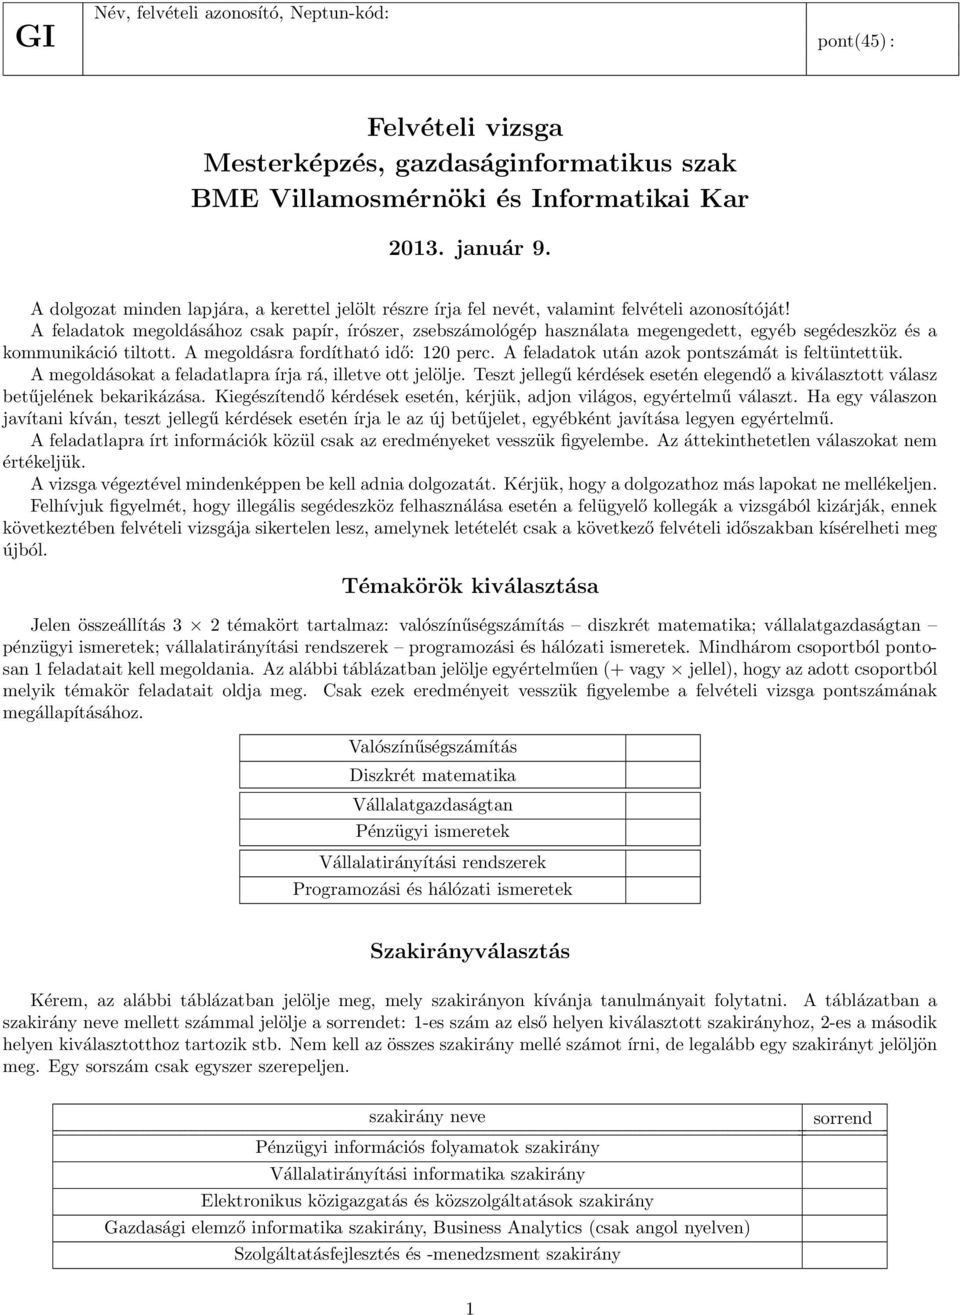 Felvételi vizsga Mesterképzés, gazdaságinformatikus szak BME  Villamosmérnöki és Informatikai Kar január 9. - PDF Ingyenes letöltés